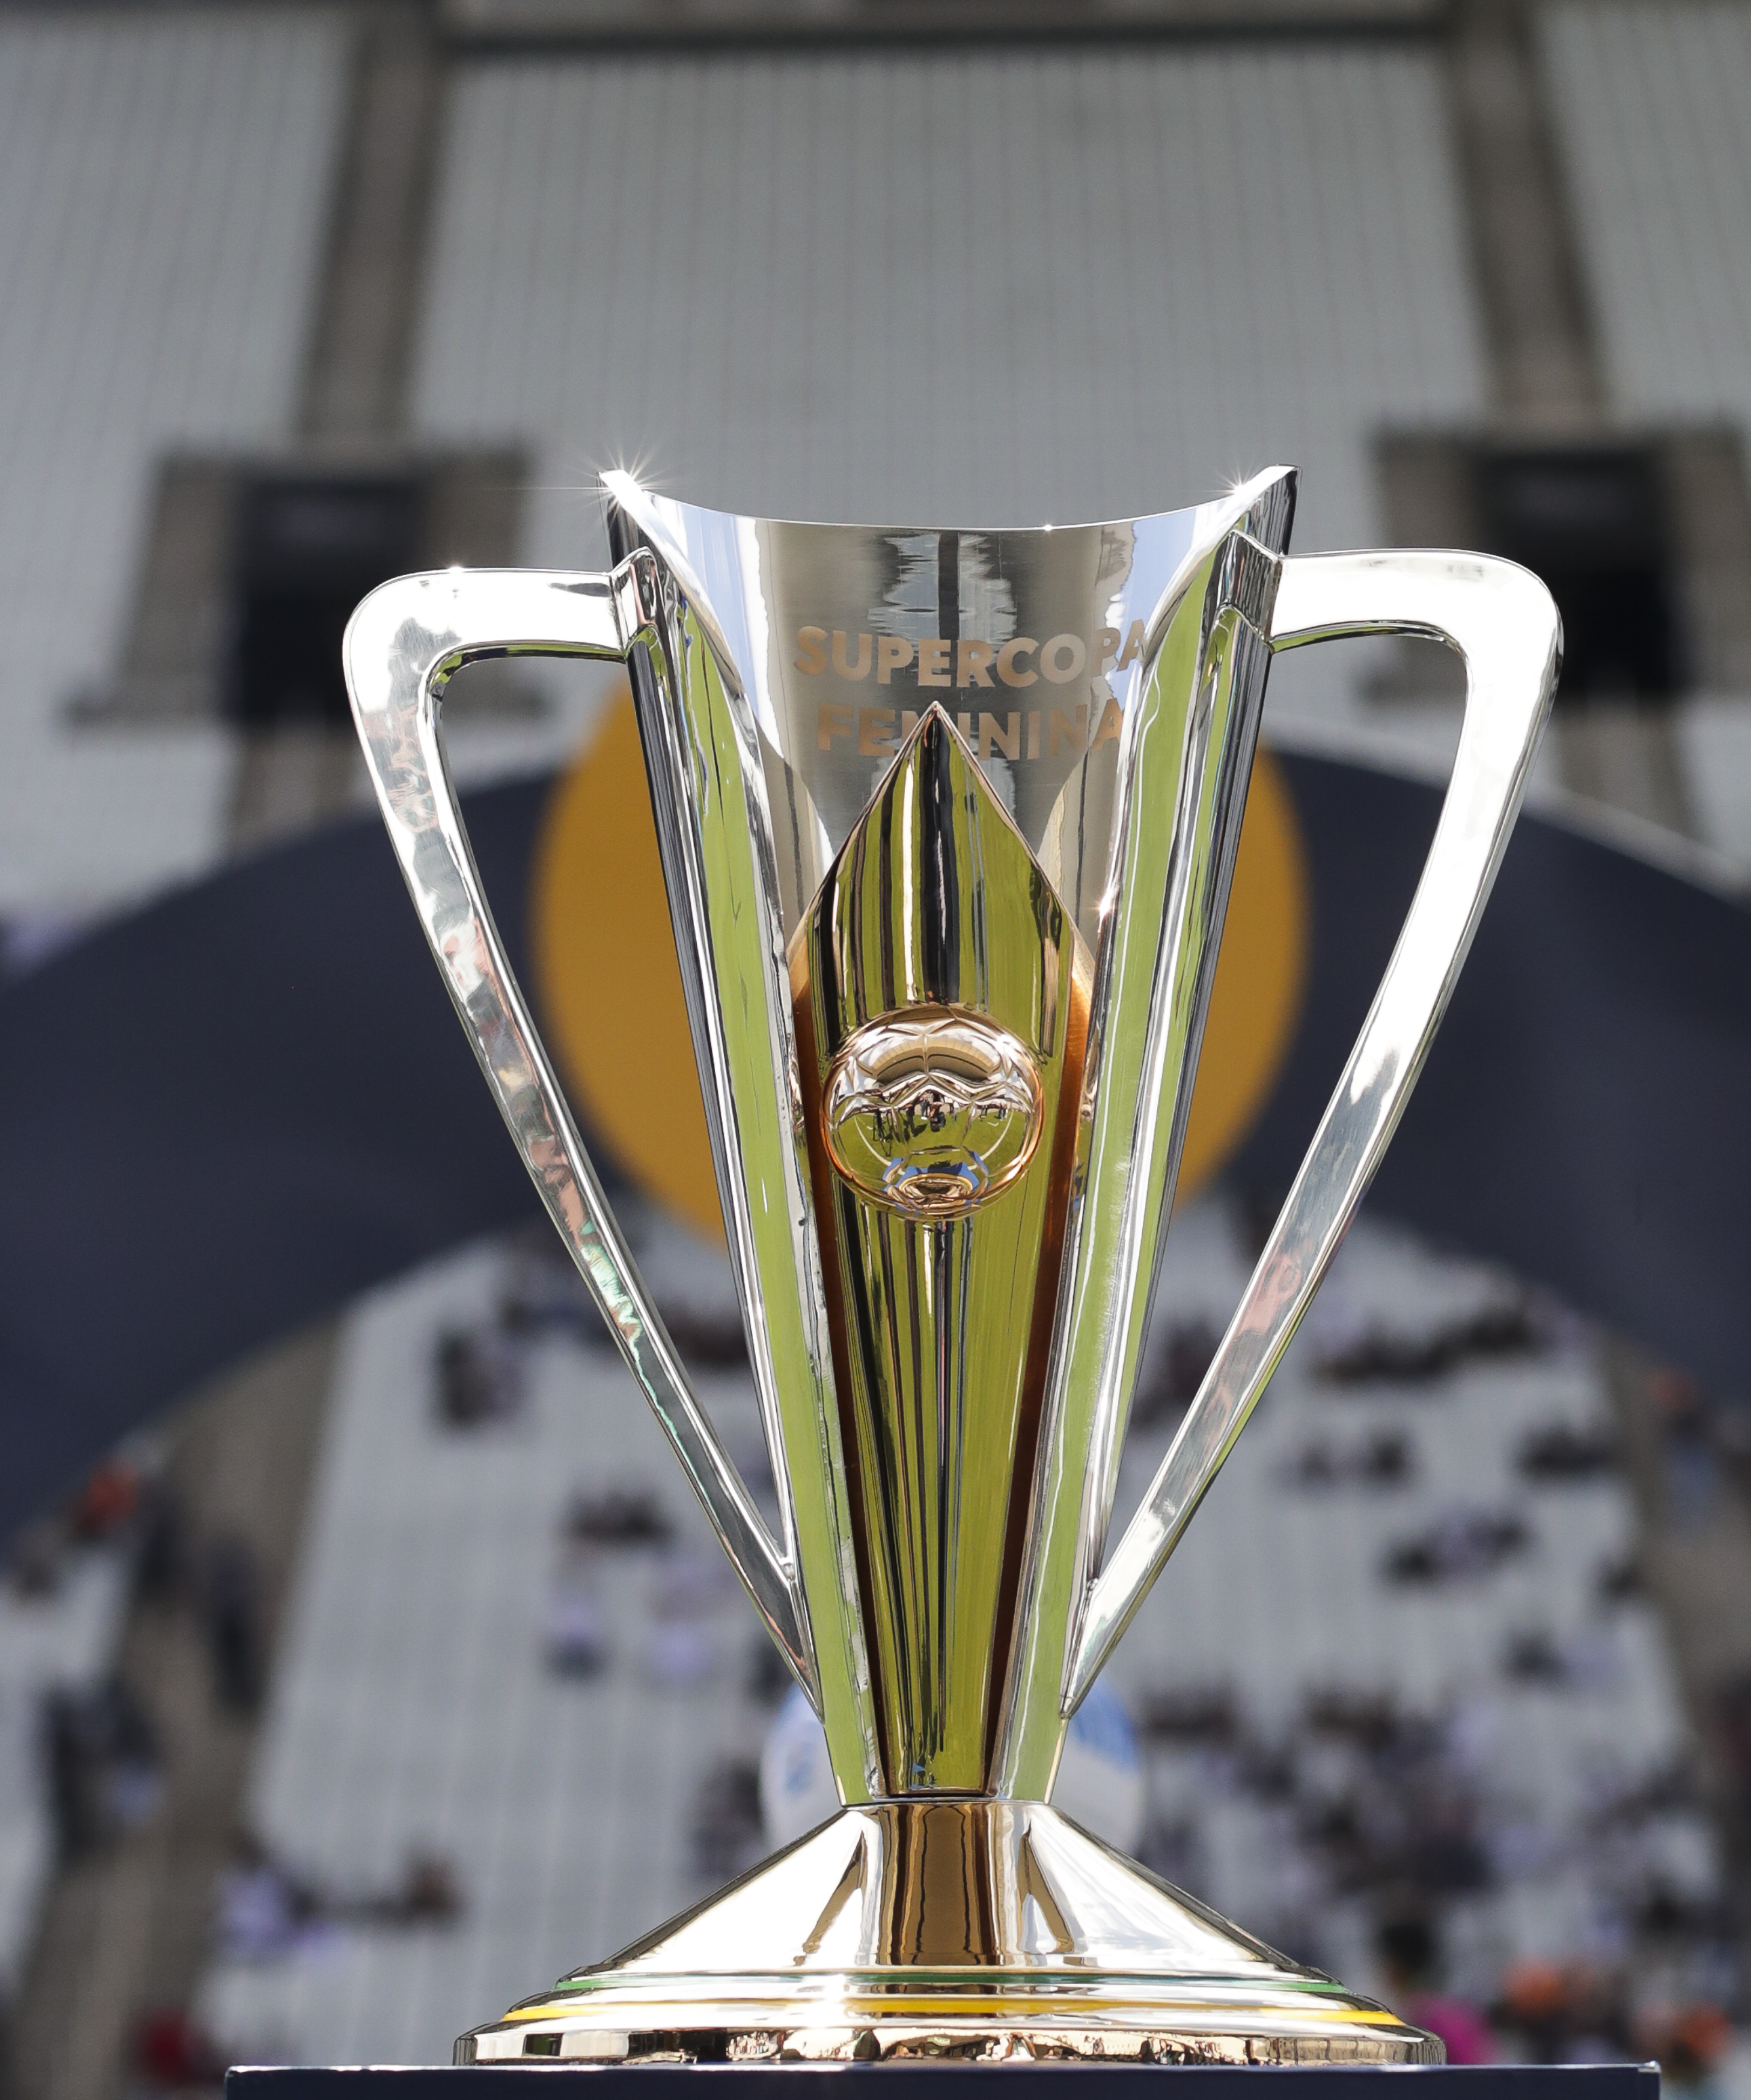 CBF confirma criação da Supercopa do Brasil Feminina; primeira edição será  em 2022